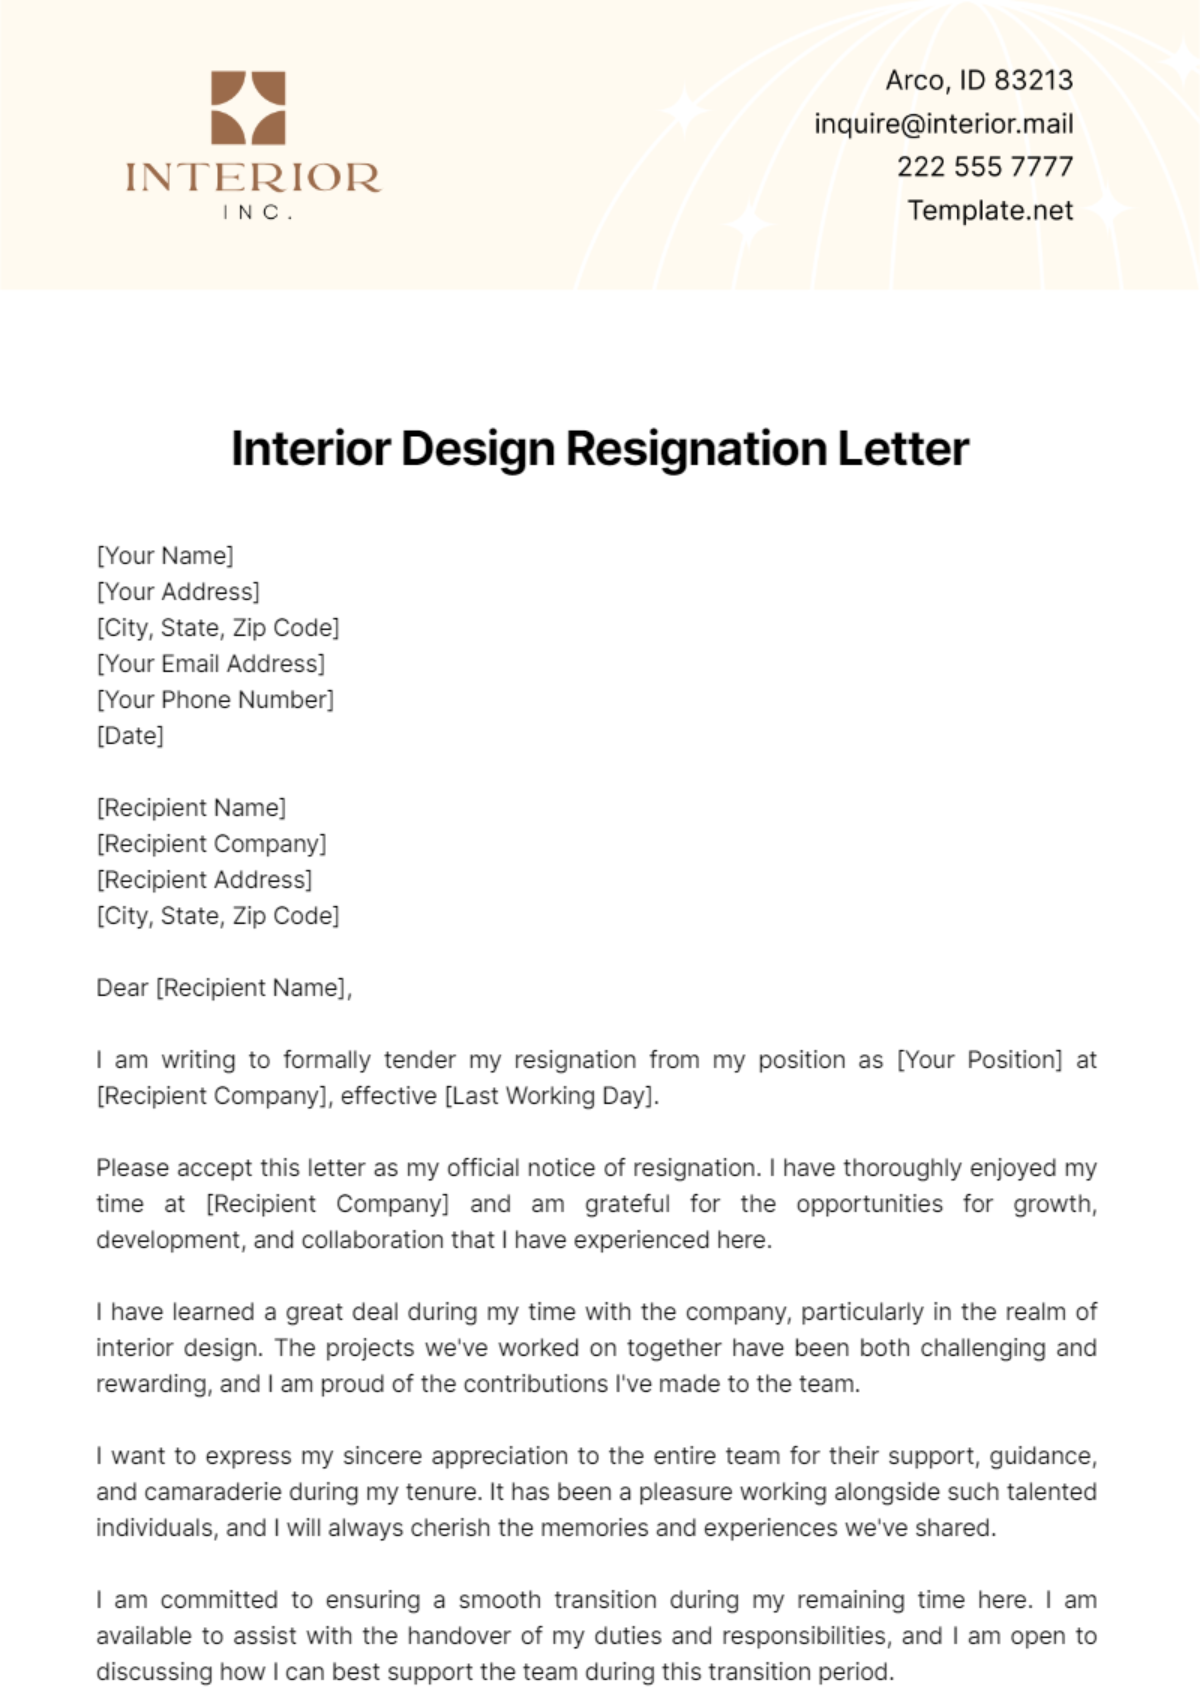 Interior Design Resignation Letter Template